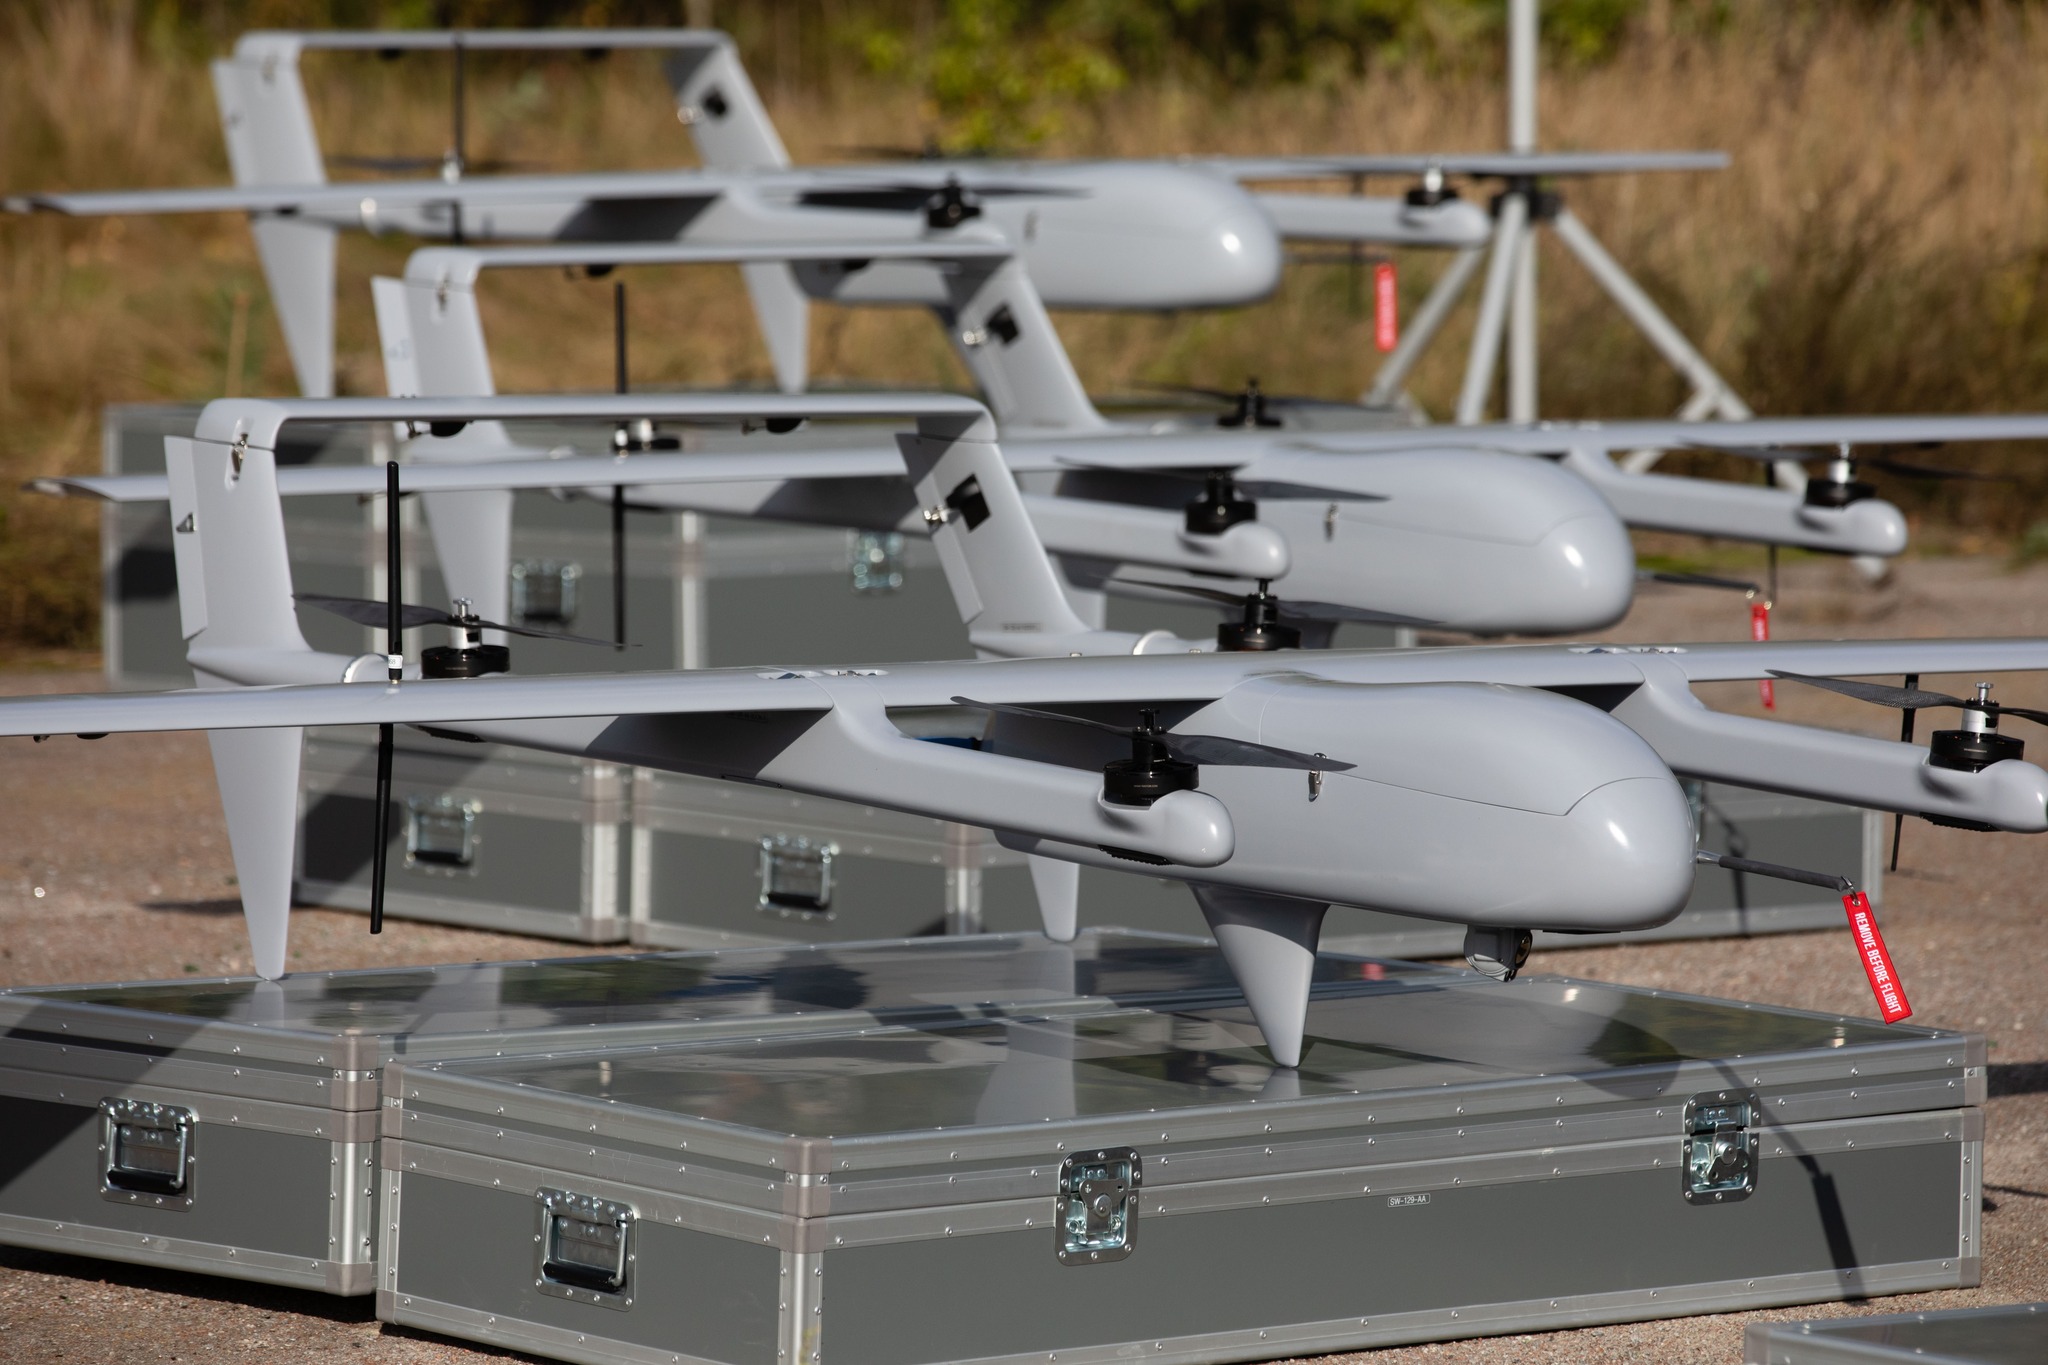 Les volontaires ont acheté six drones H10 Poseidon pour l'AFU, ils ont des optiques israéliennes, une caméra thermique et peuvent voler jusqu'à 150 km.